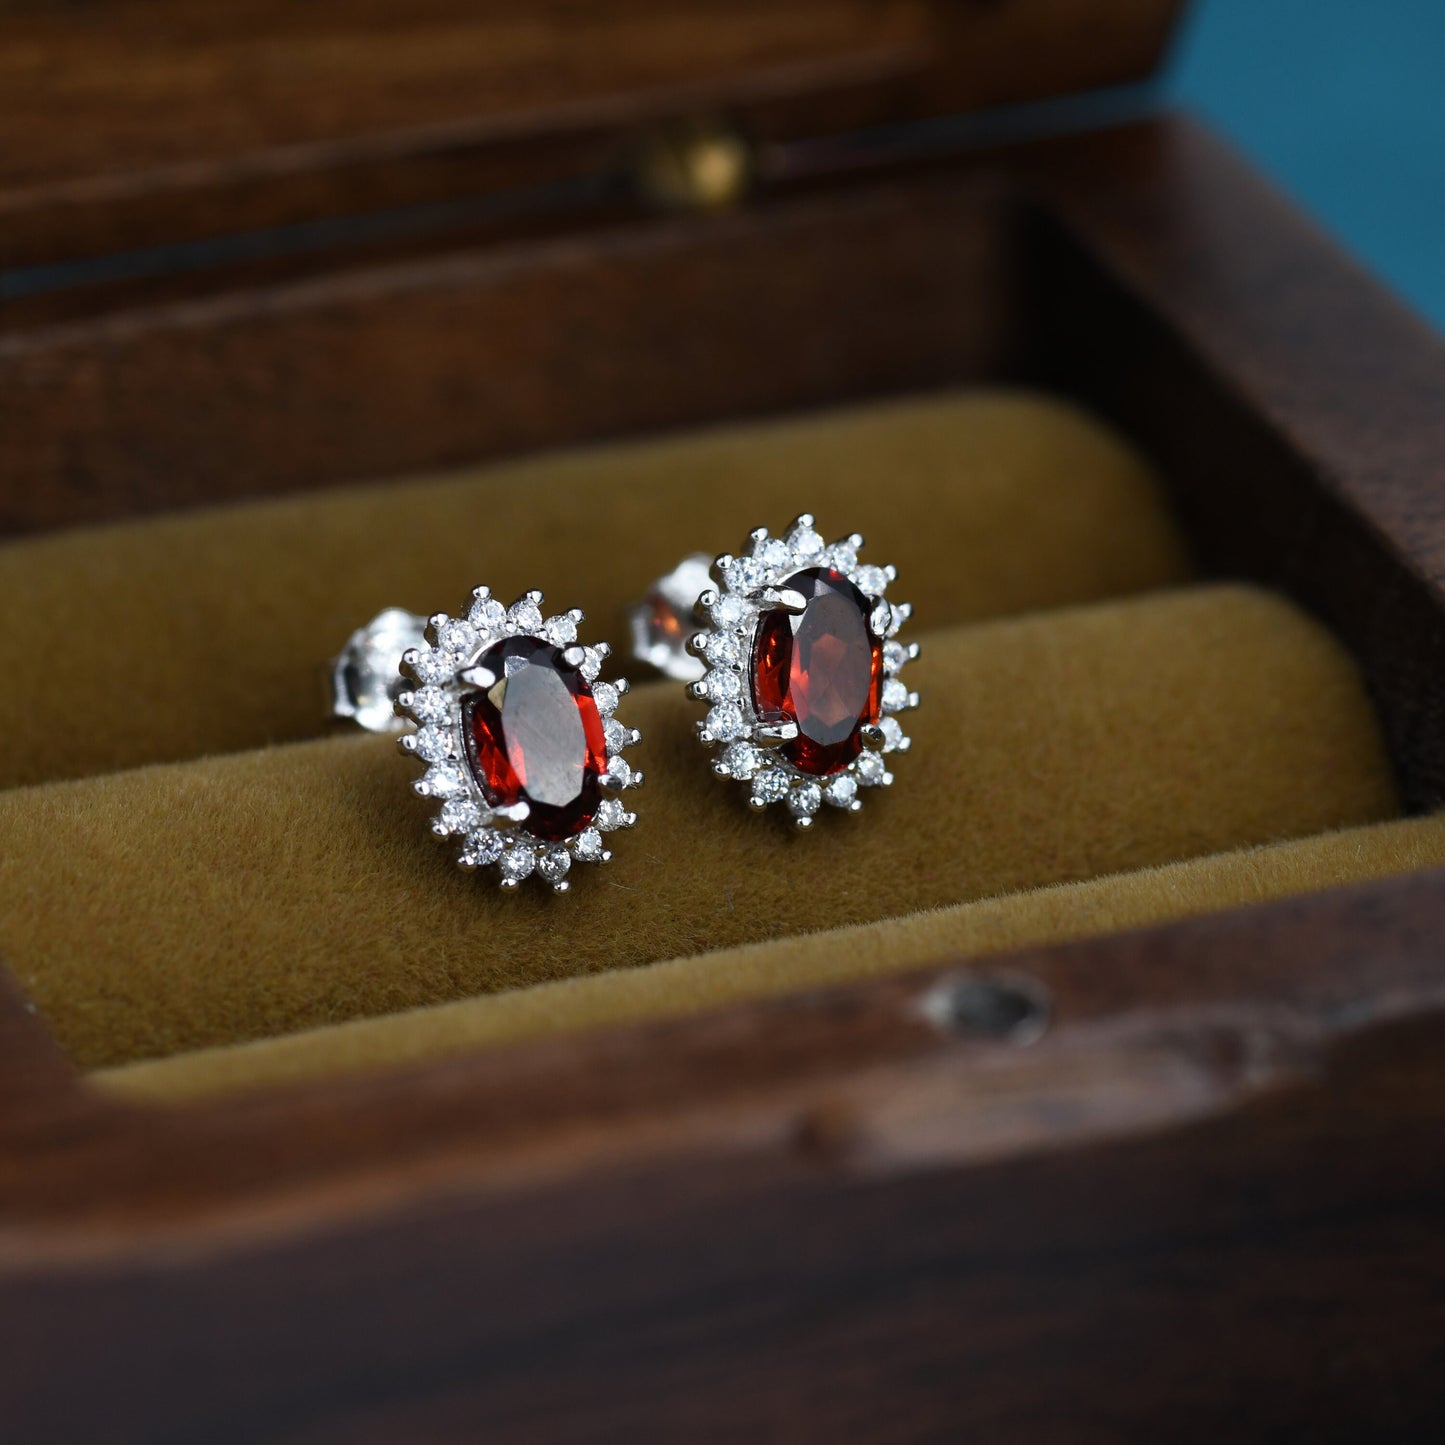 Genuine Garnet Red Crystal Stud Earrings in Sterling Silver, Natural Red Garnet Oval Stud Earrings